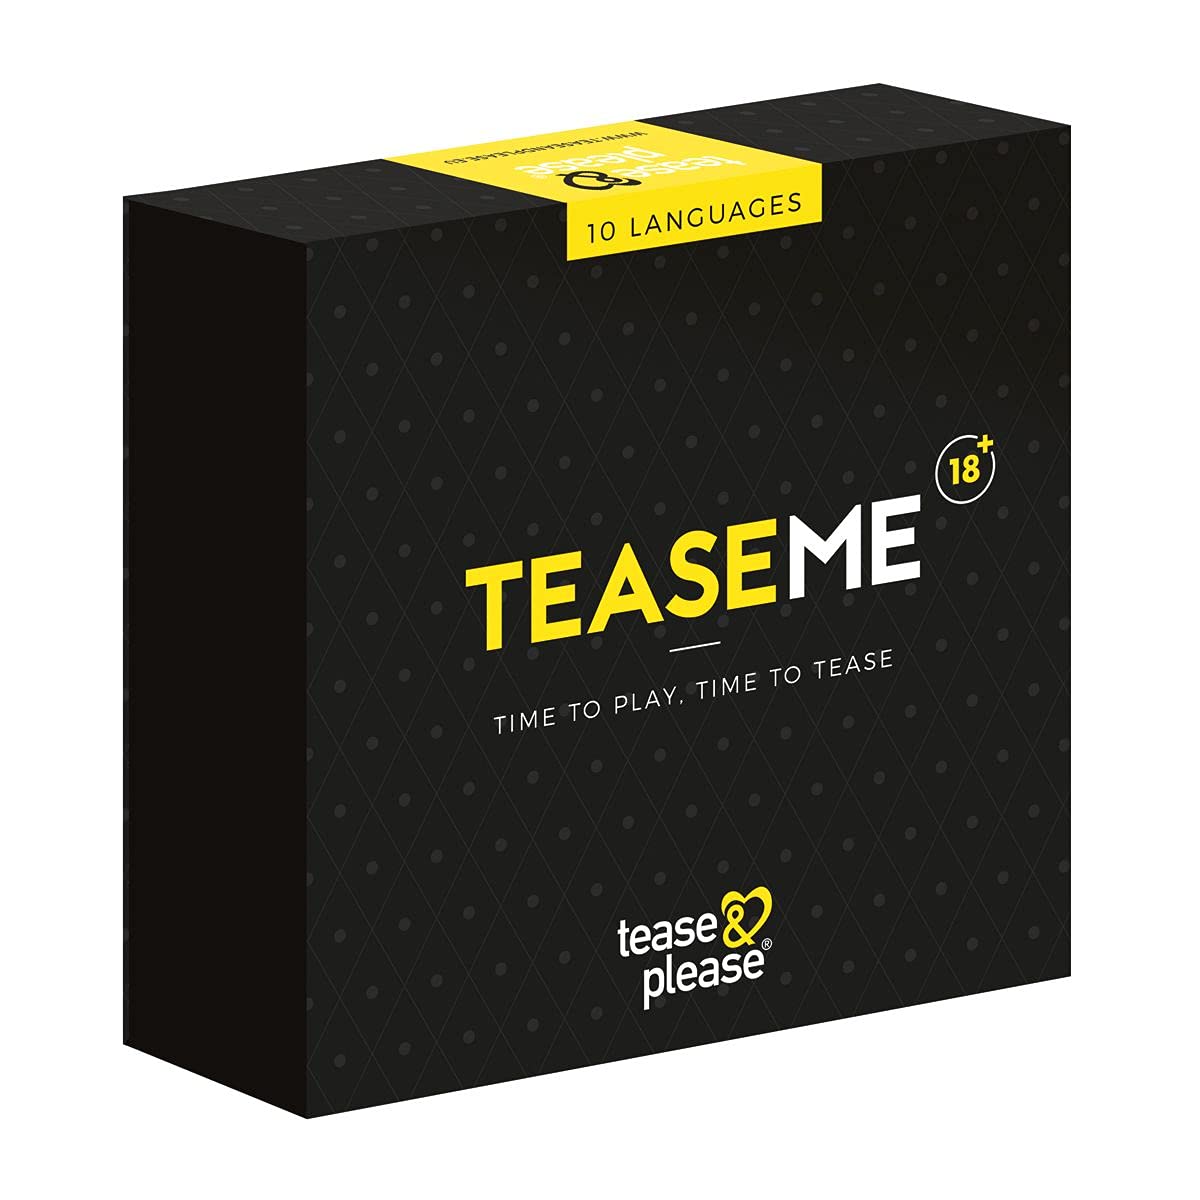 Tease & Please TeaseMe Game (10 Sprachen) - Spiele für Erwachsene zum Necken mit inkludierten Attributen - Erotische Spiele mit Rollenspiel für etwas Spaß im Schlafzimmer für Erwachsene